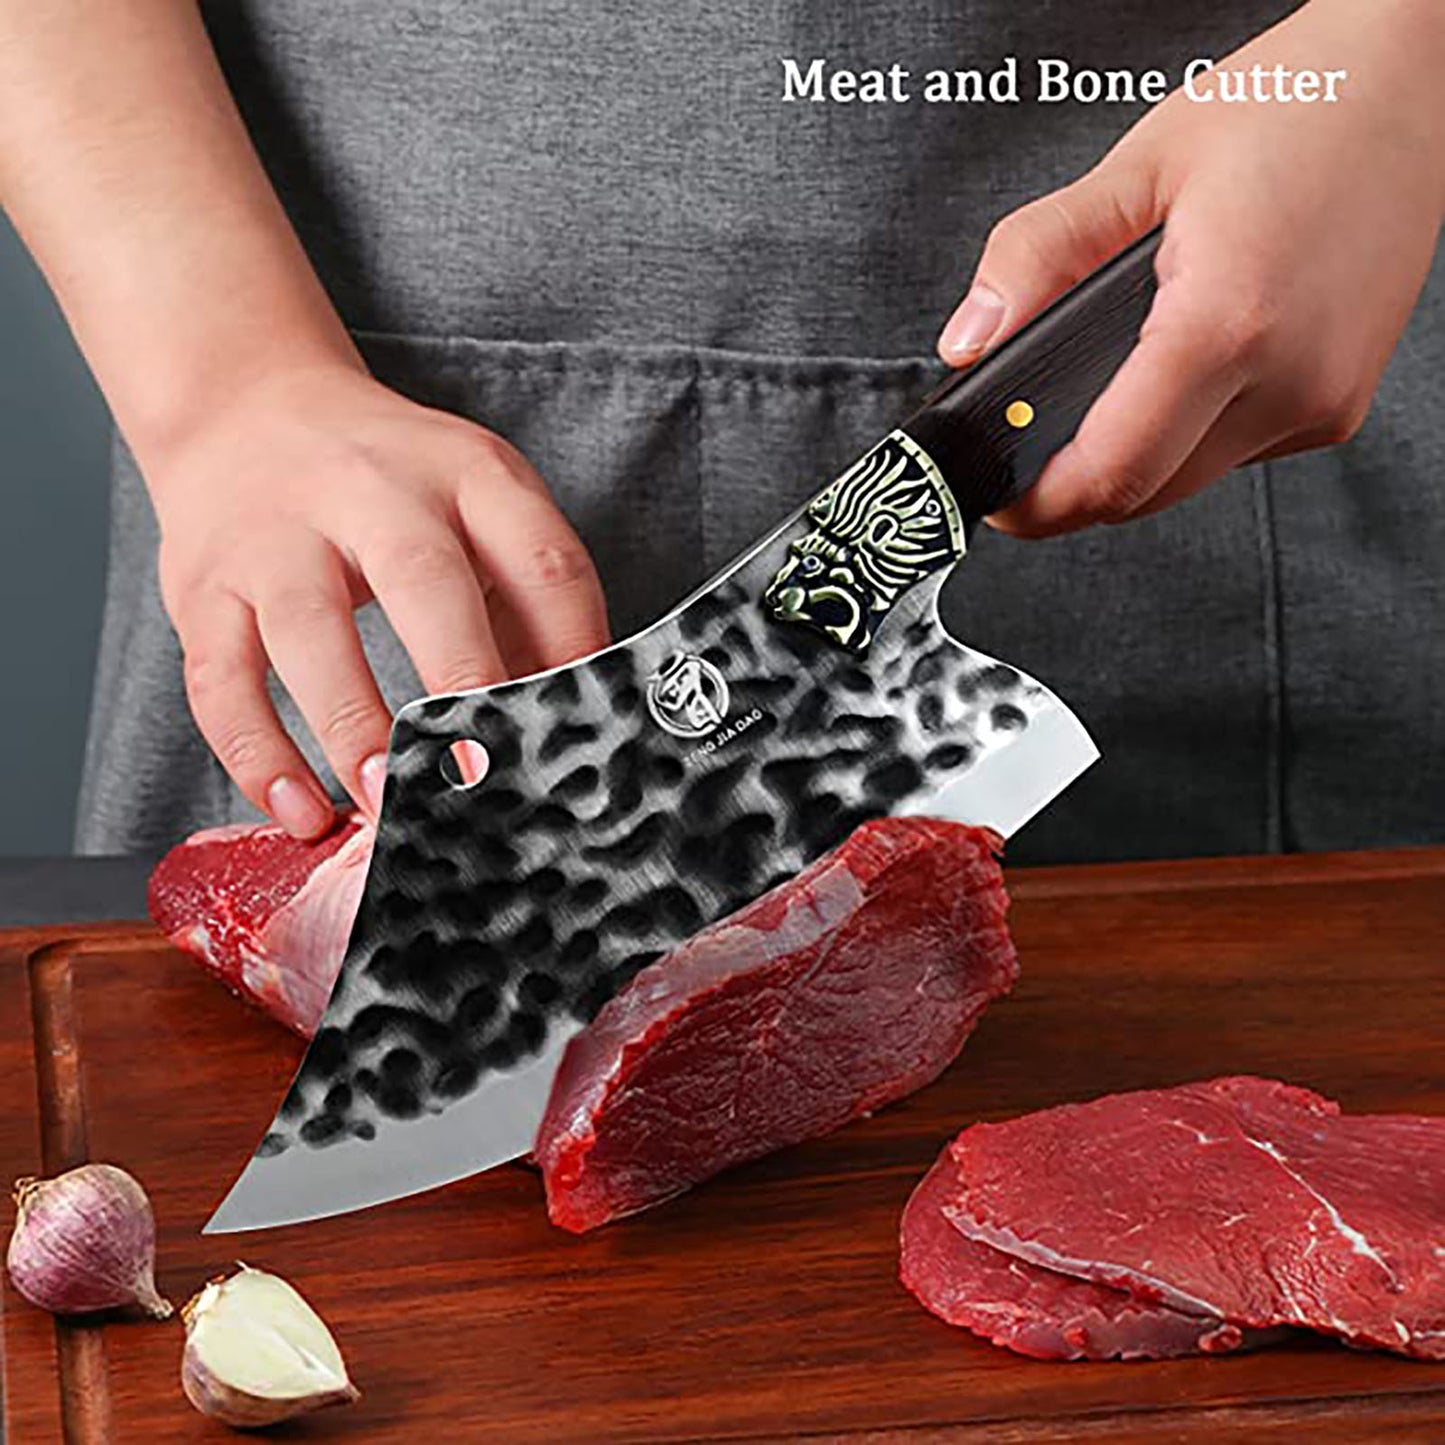 ZENG JIA DA Butcher Knife With Wenge Wood Handle